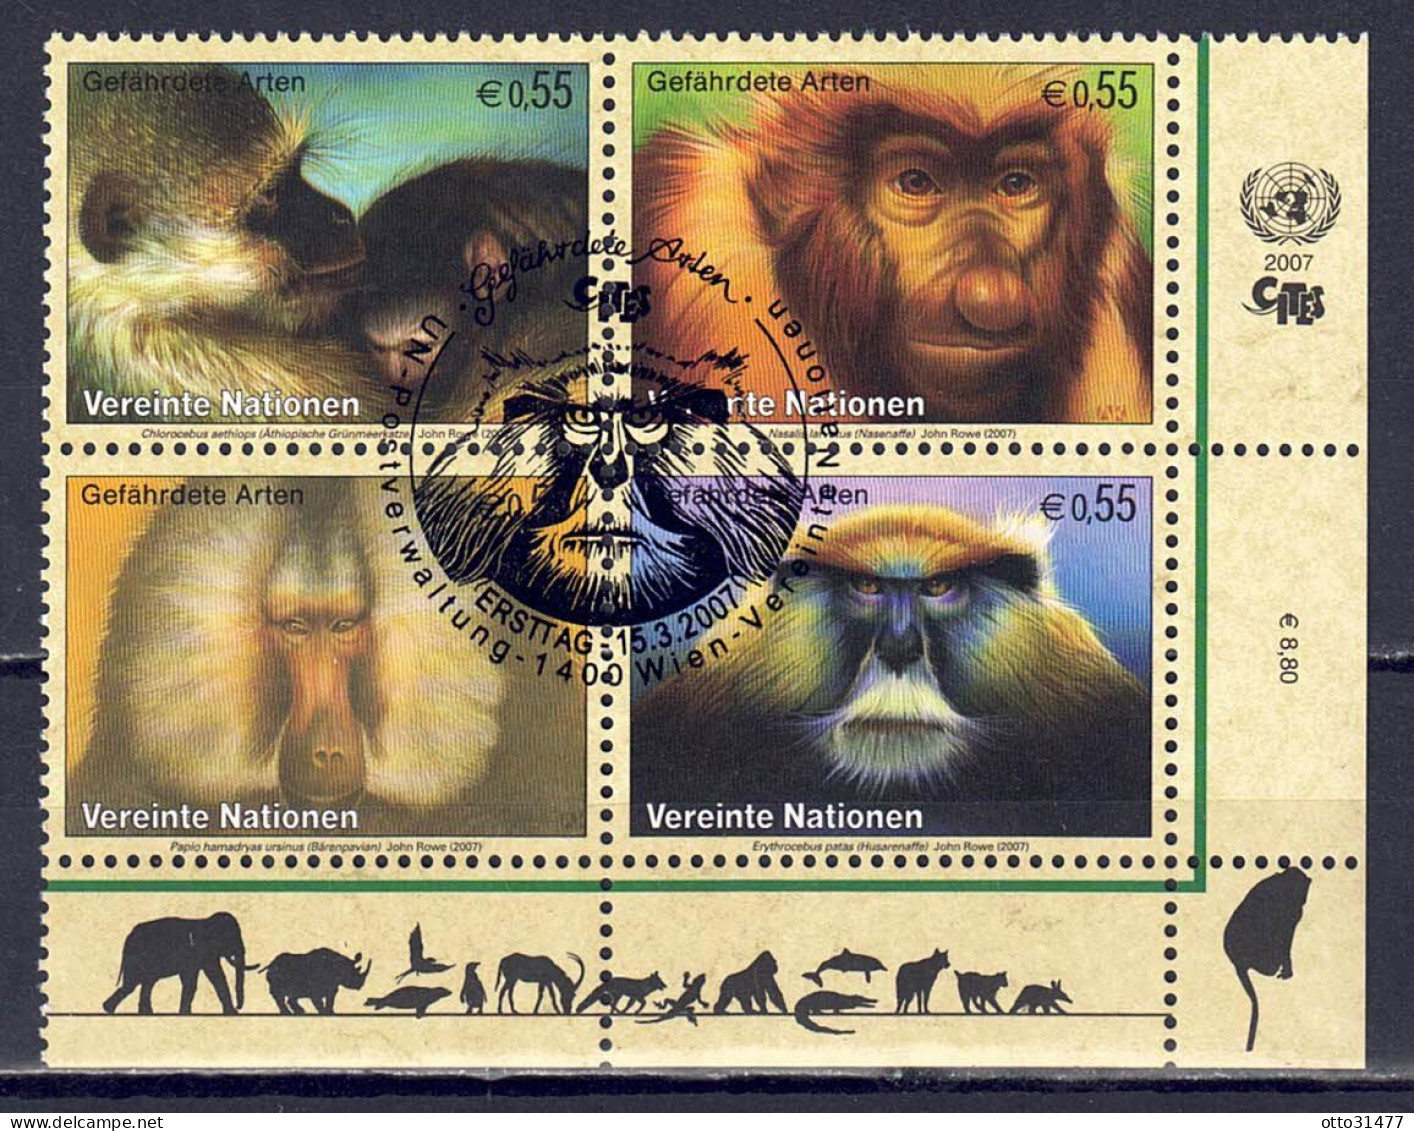 UNO Wien 2007 - Gefährdete Arten (XV) - Primaten, Nr. 485 - 488 Zd., Gestempelt / Used - Usados